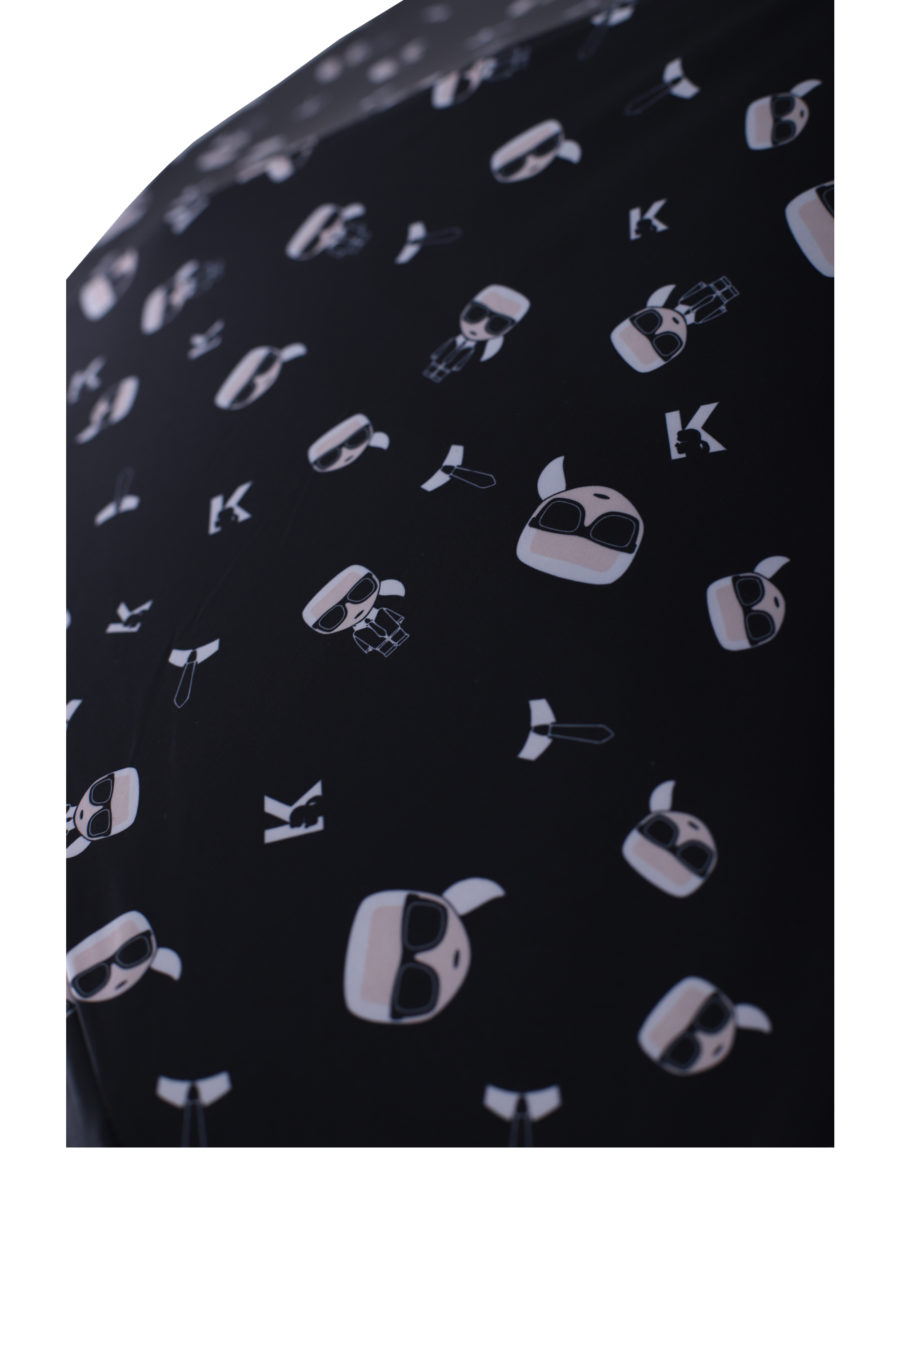 Paraguas color negro con patrón de la marca - IMG 0126